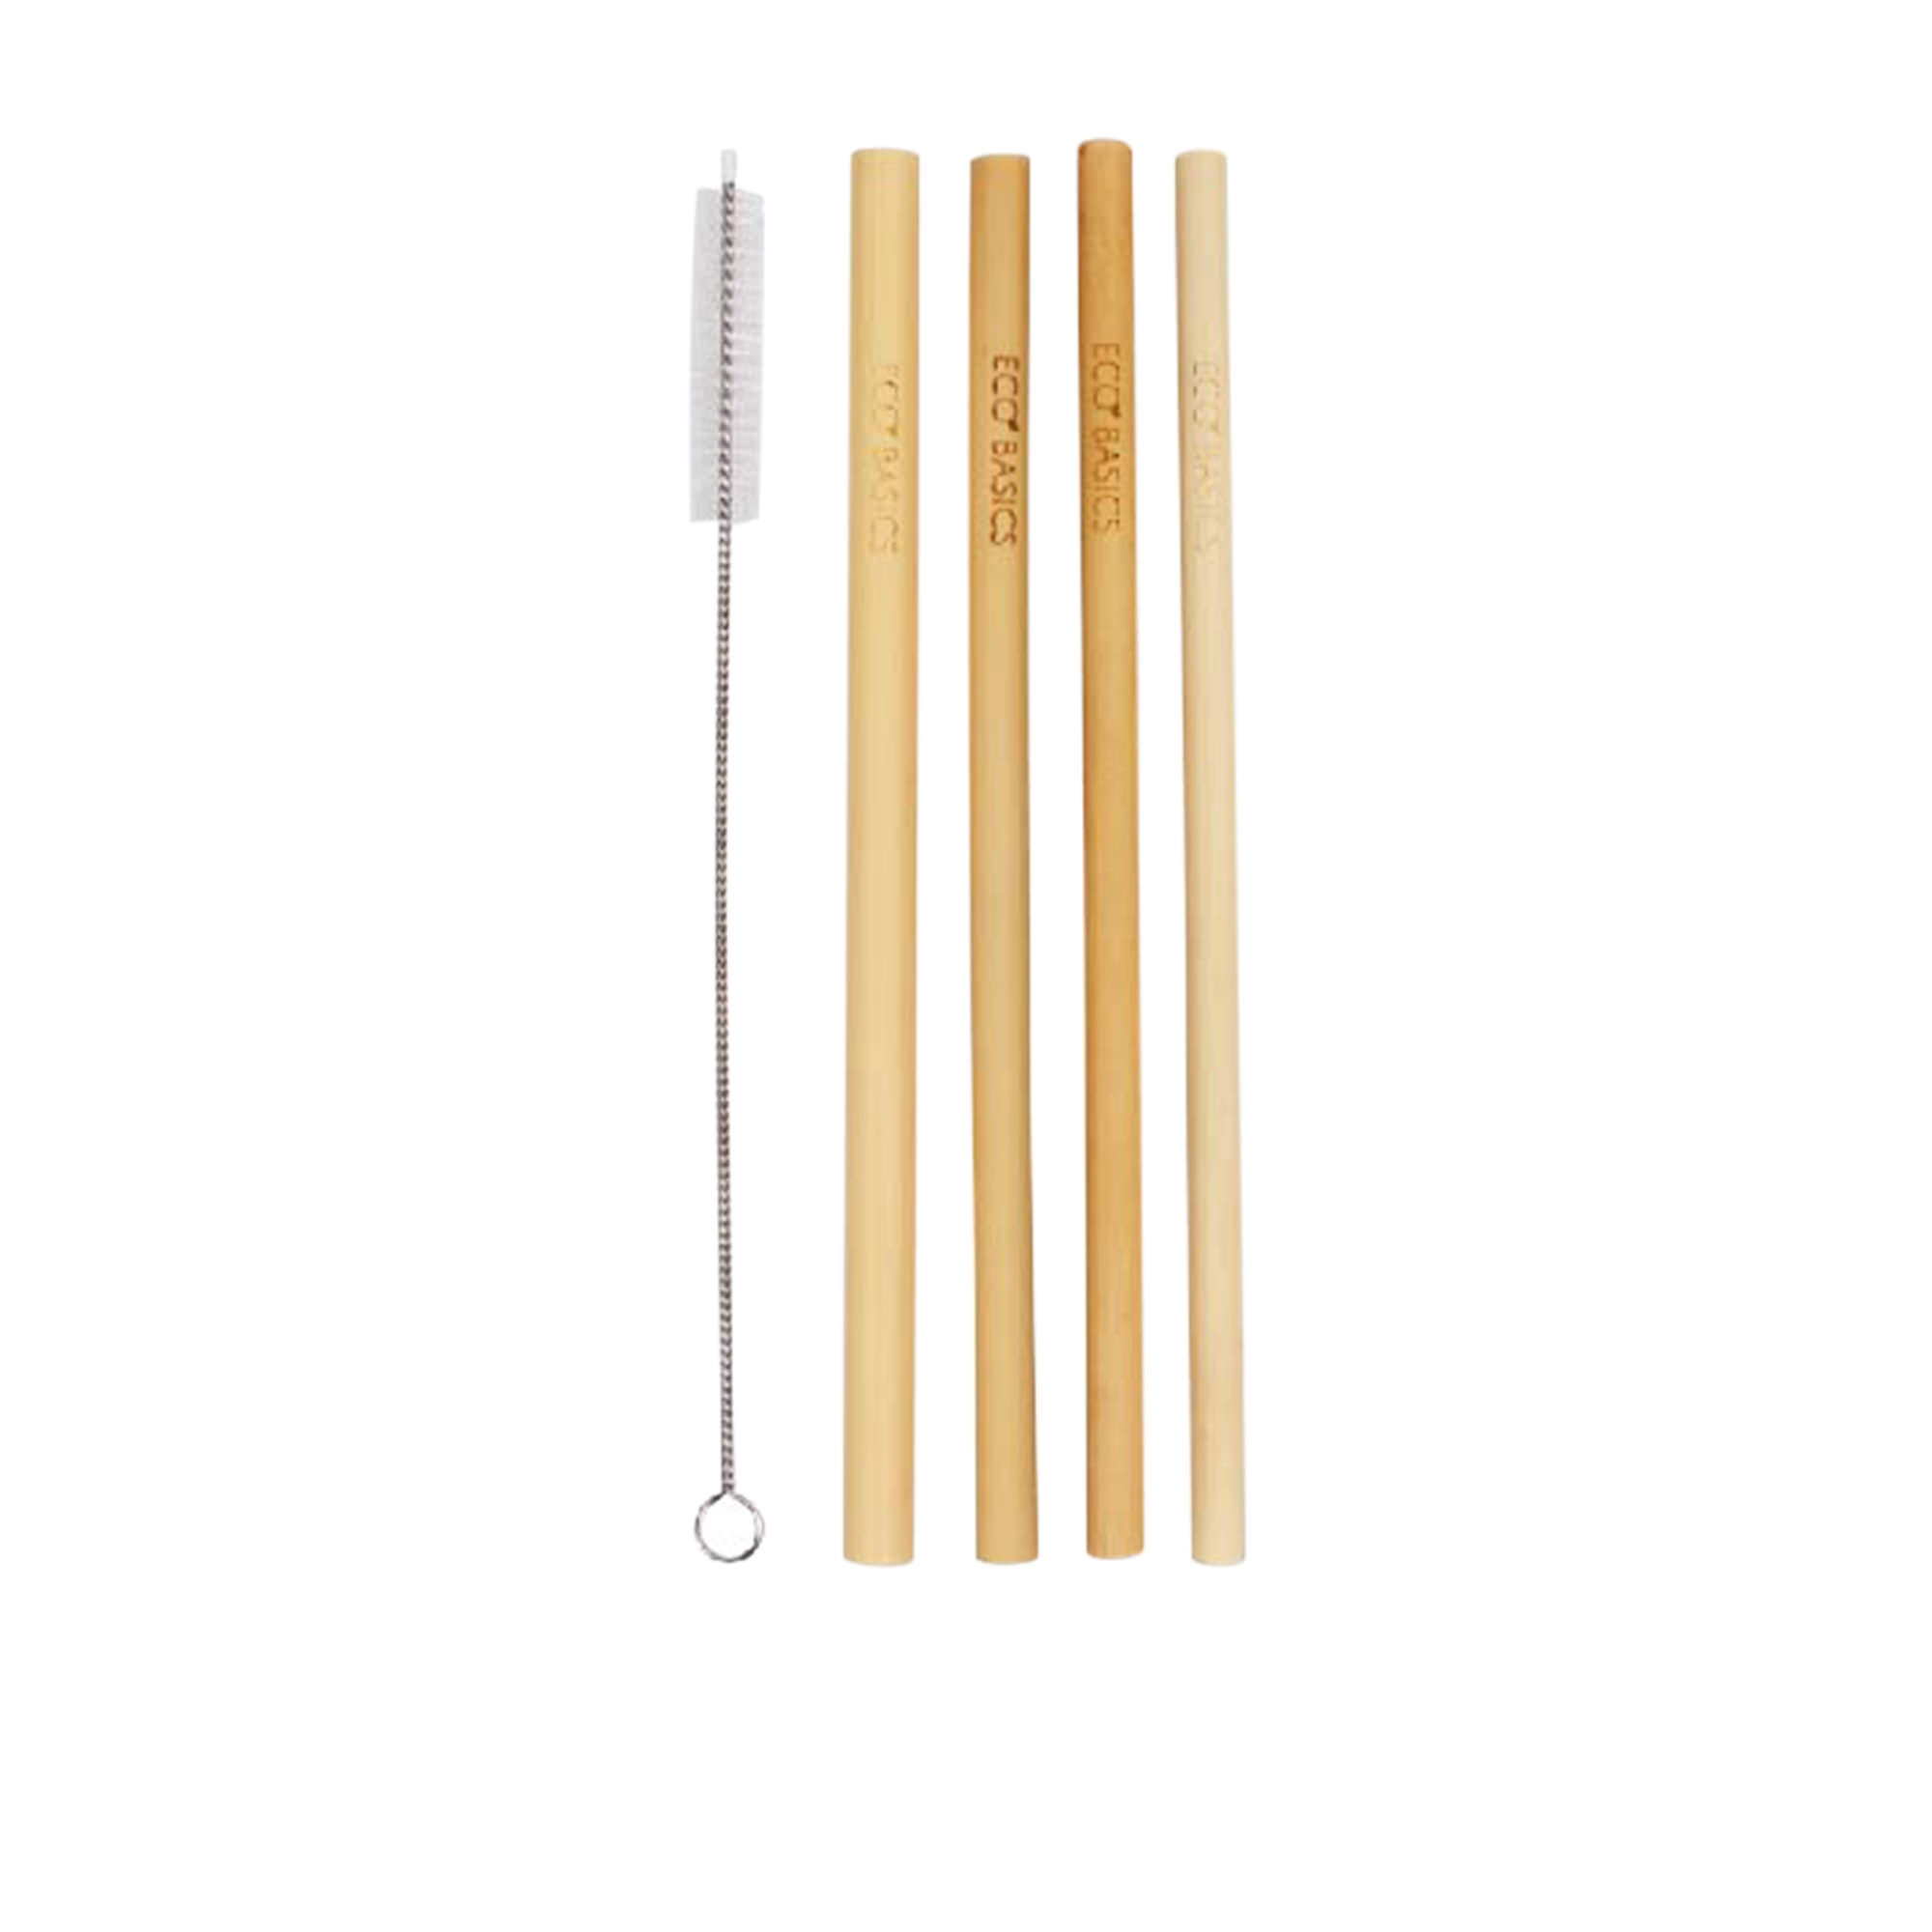 White Magic Eco Basics Bamboo Straws 4pk Image 1